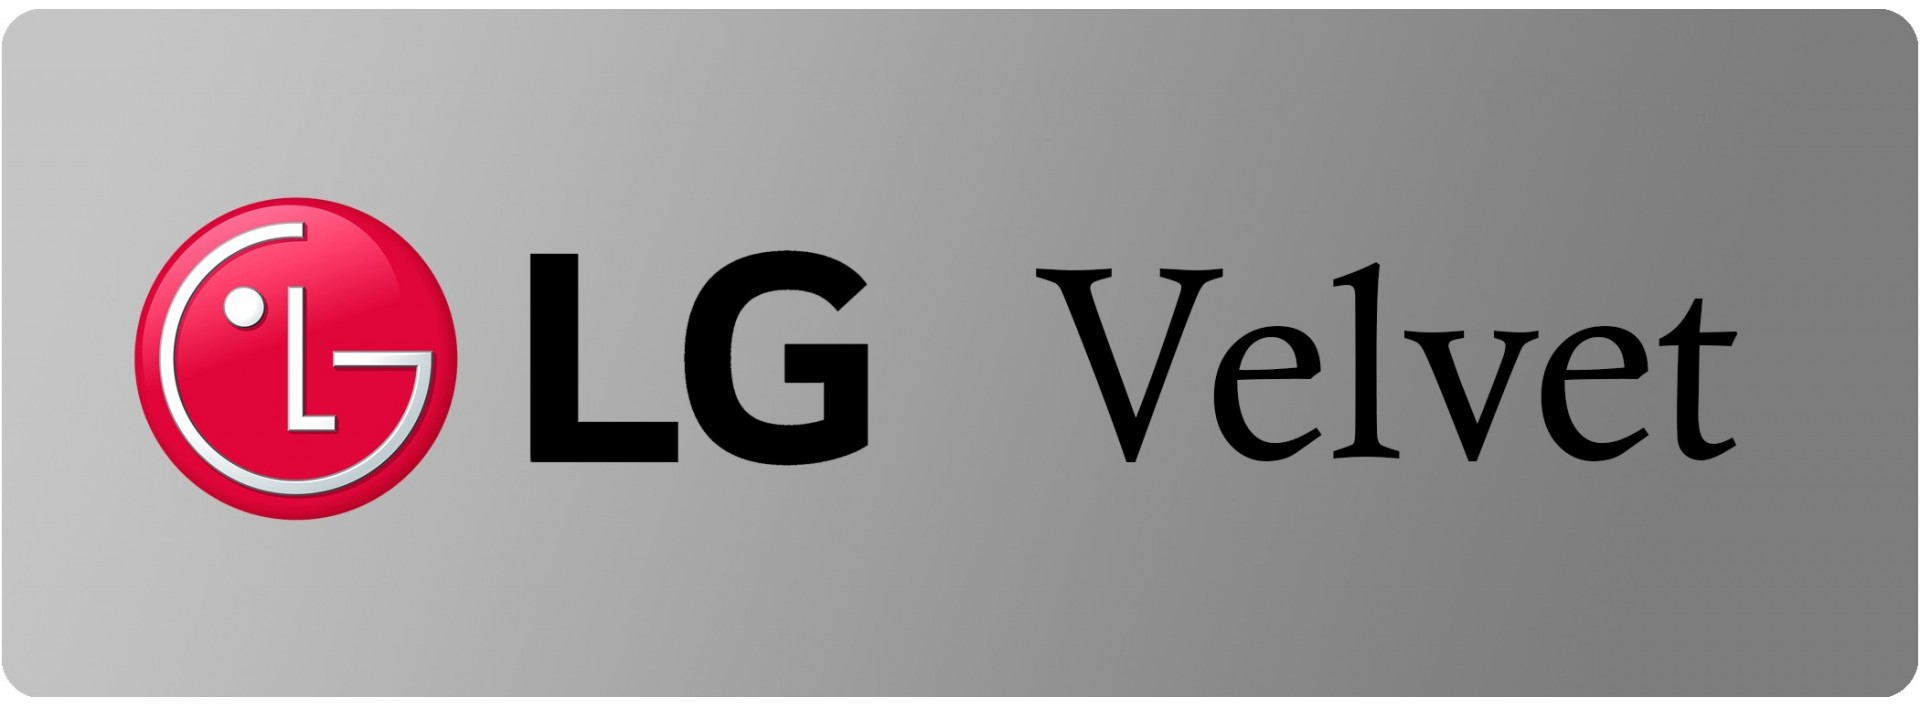 Lg Velvet 5G Fundas PERSONALIZADAS, el mejor precio y calidad